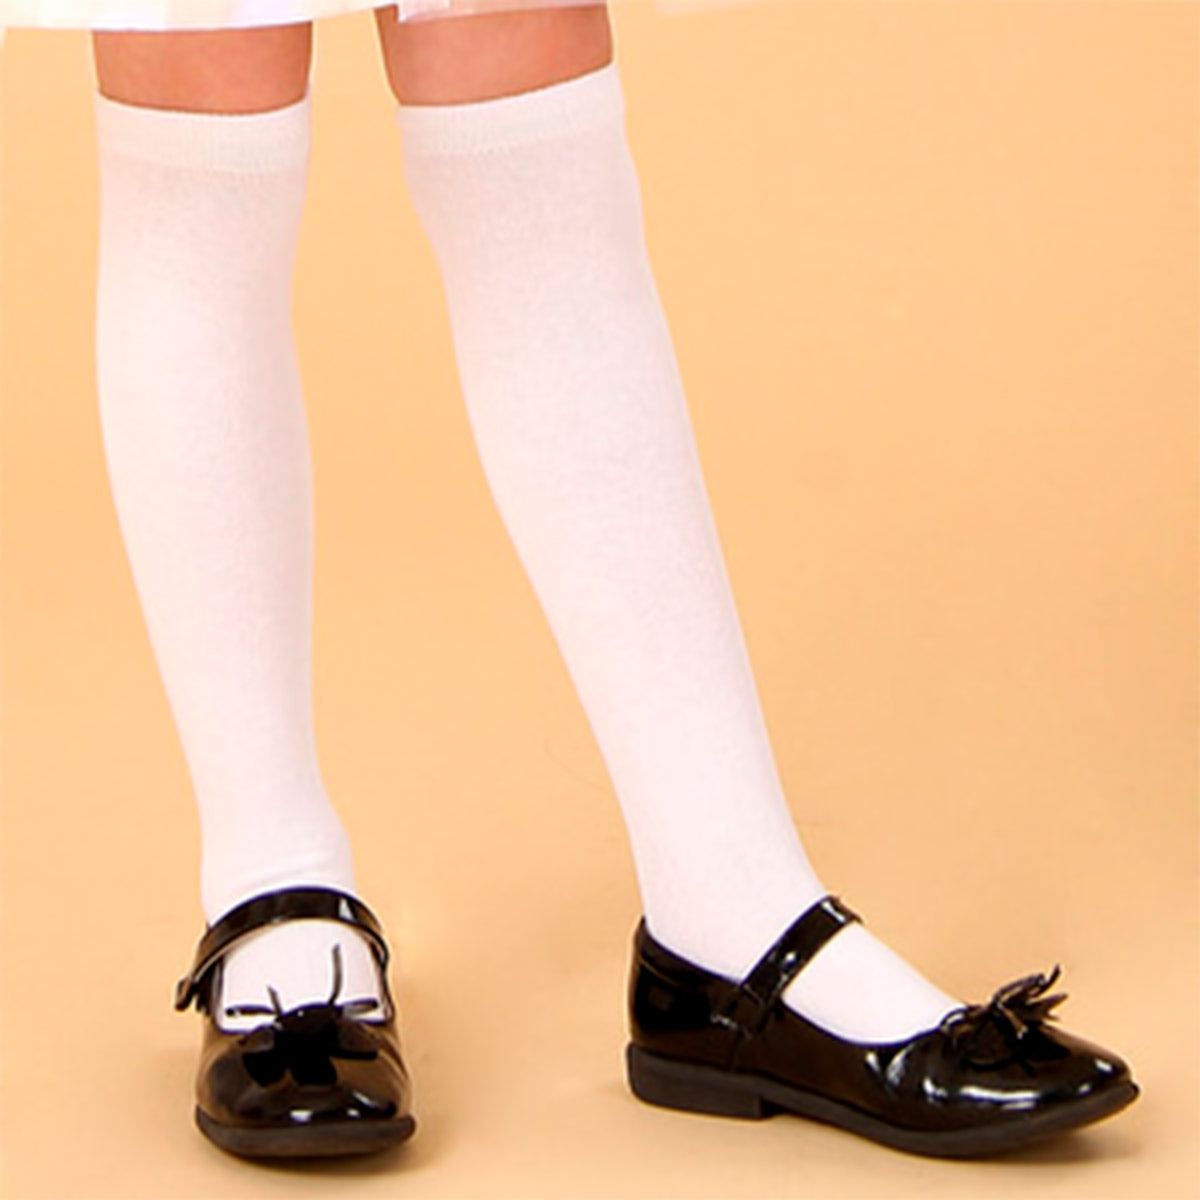 calceta escolar talla 6 a 8 años (12 pares)